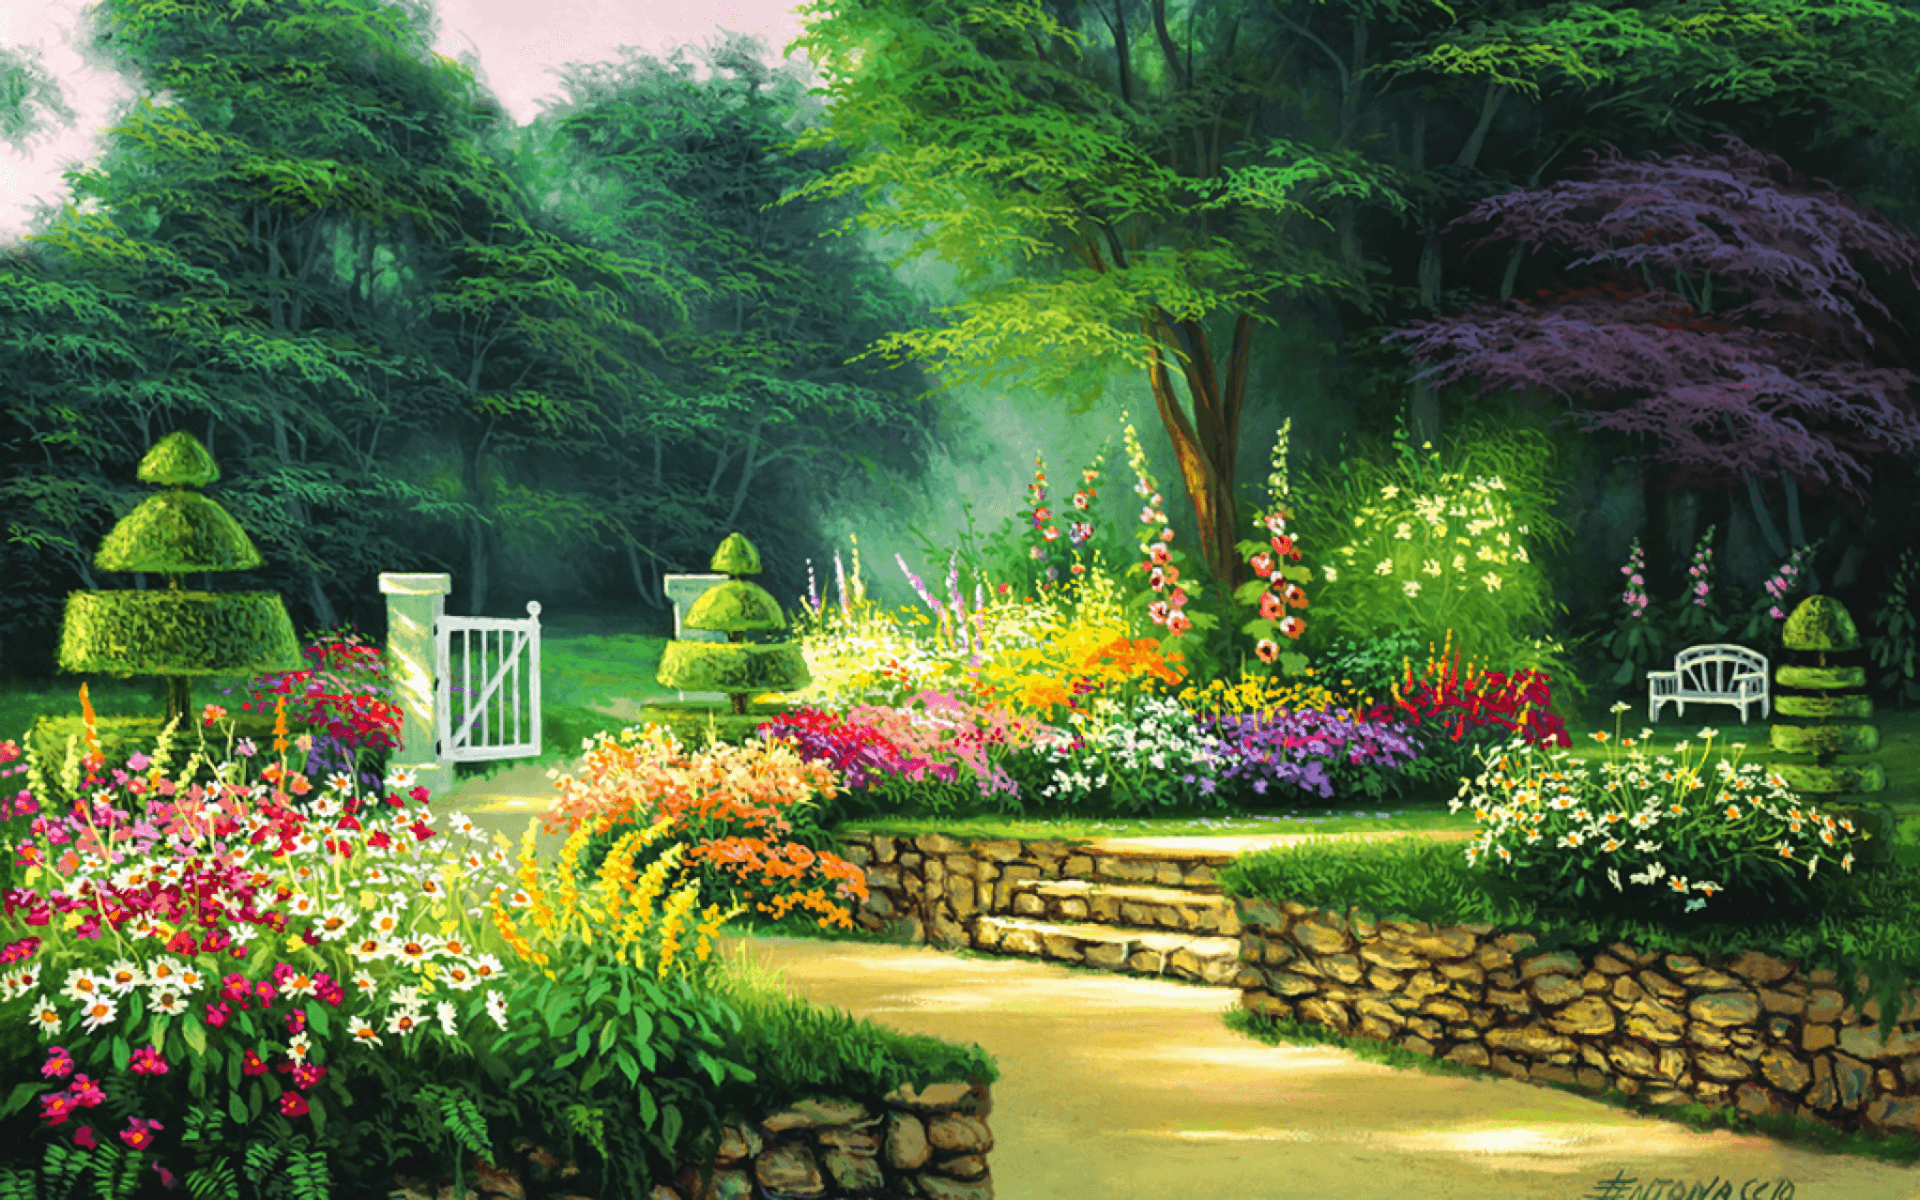 Tranh vẽ vườn hoa đẹp nhất